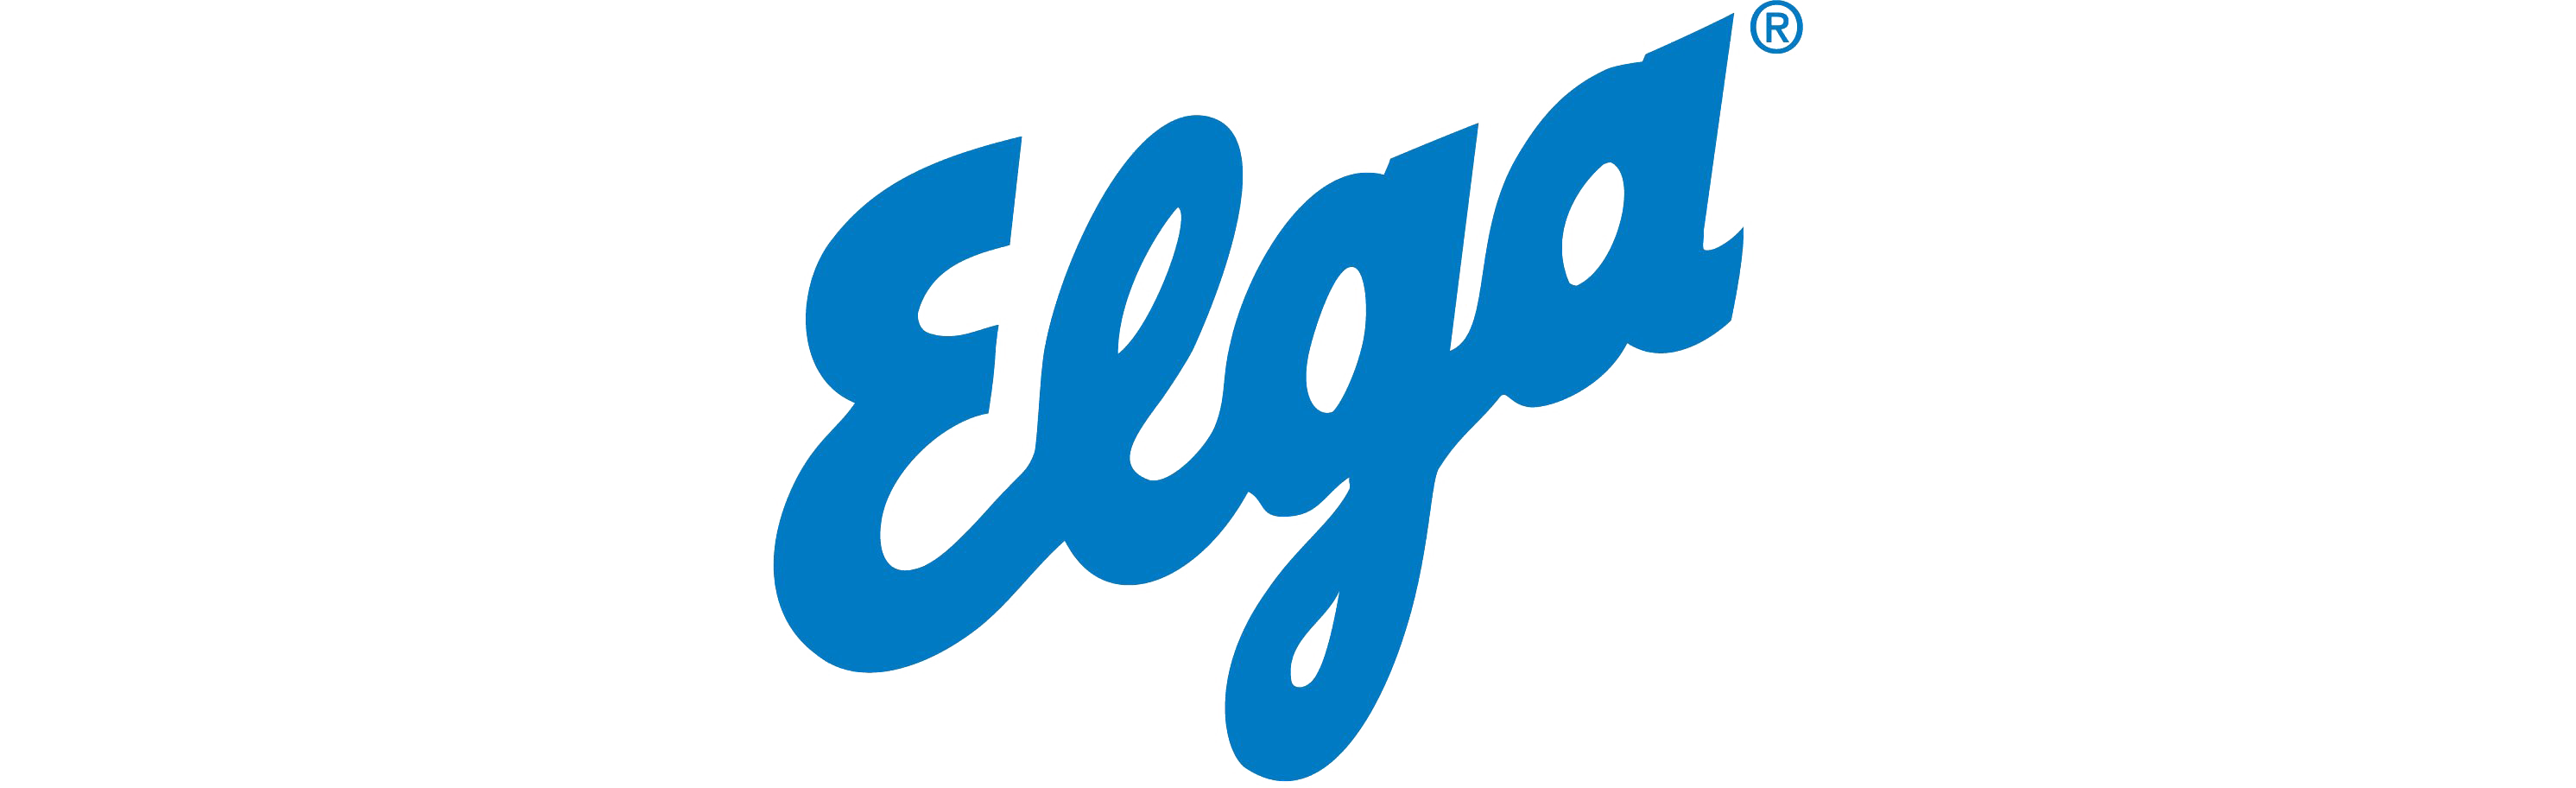 Elga Logo